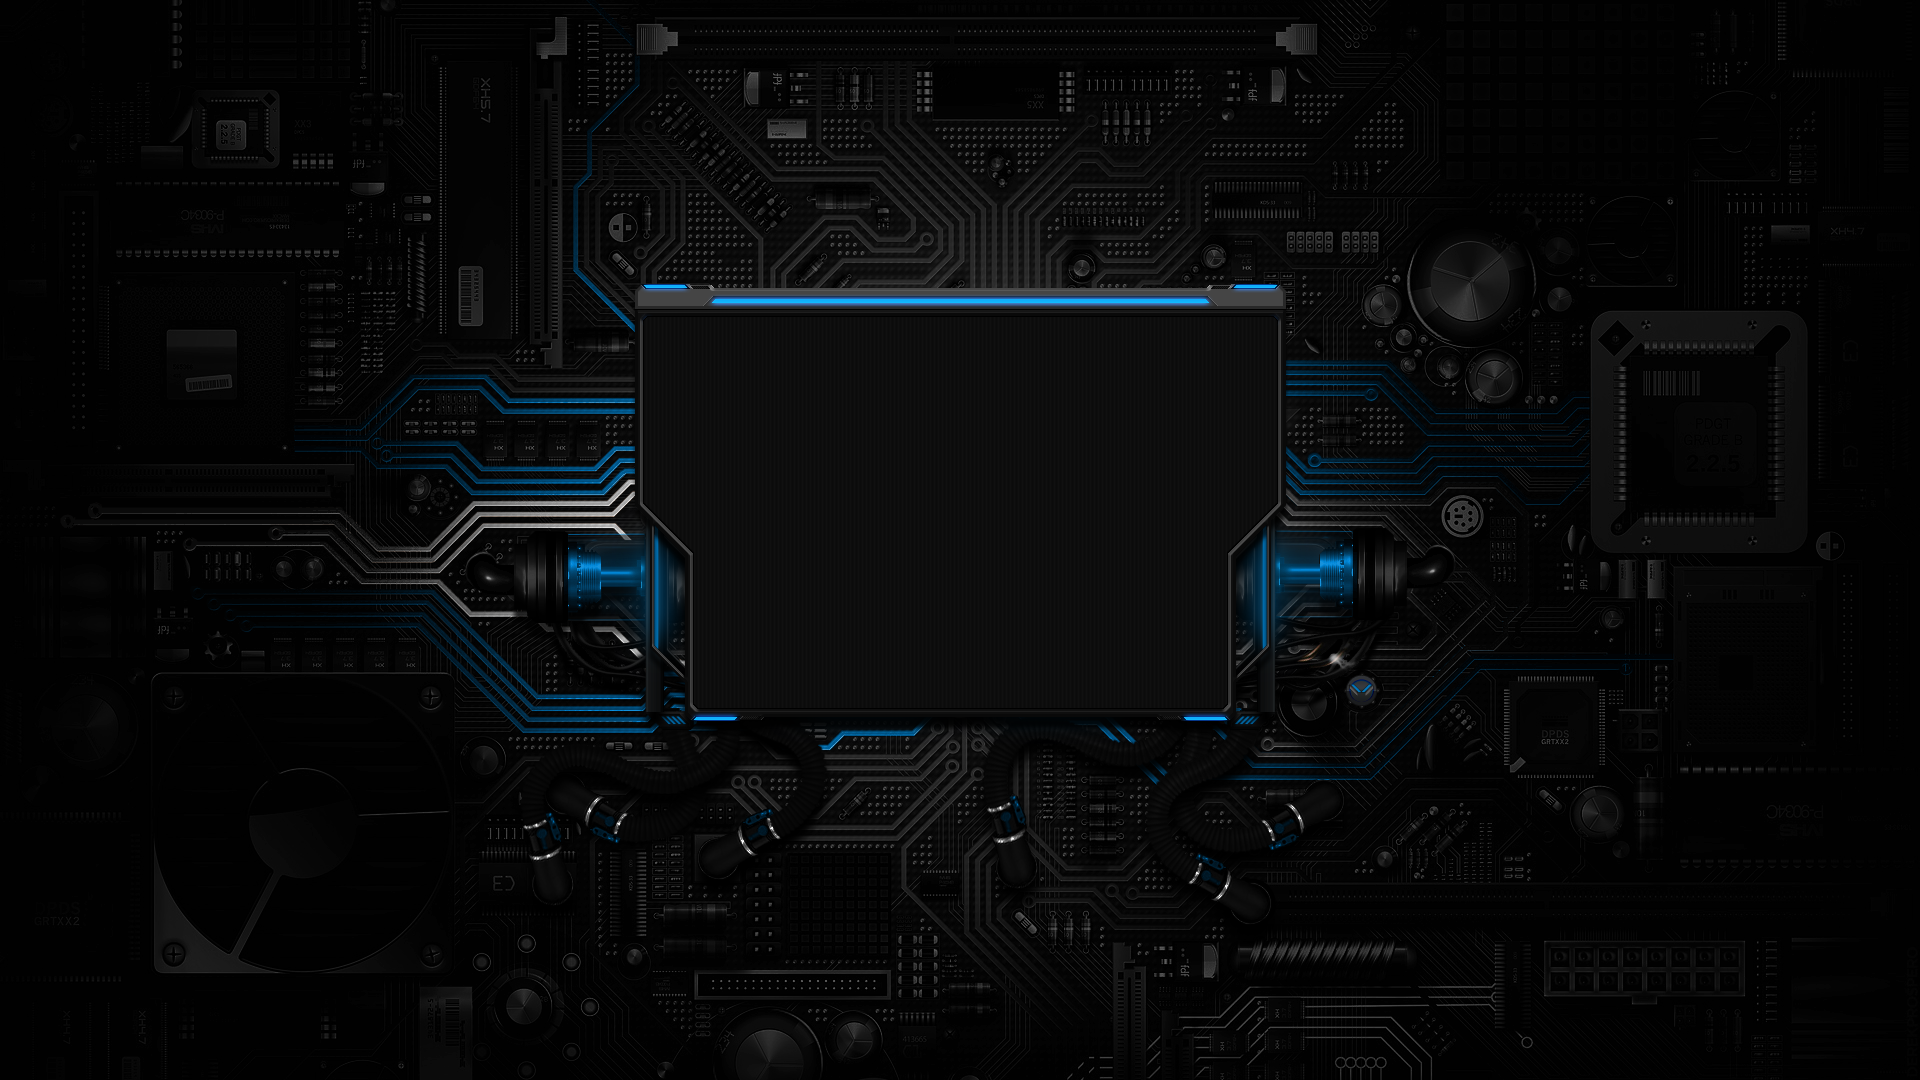 sfondo della schermata di accesso,elettronica,tecnologia,design,font,immagine dello schermo